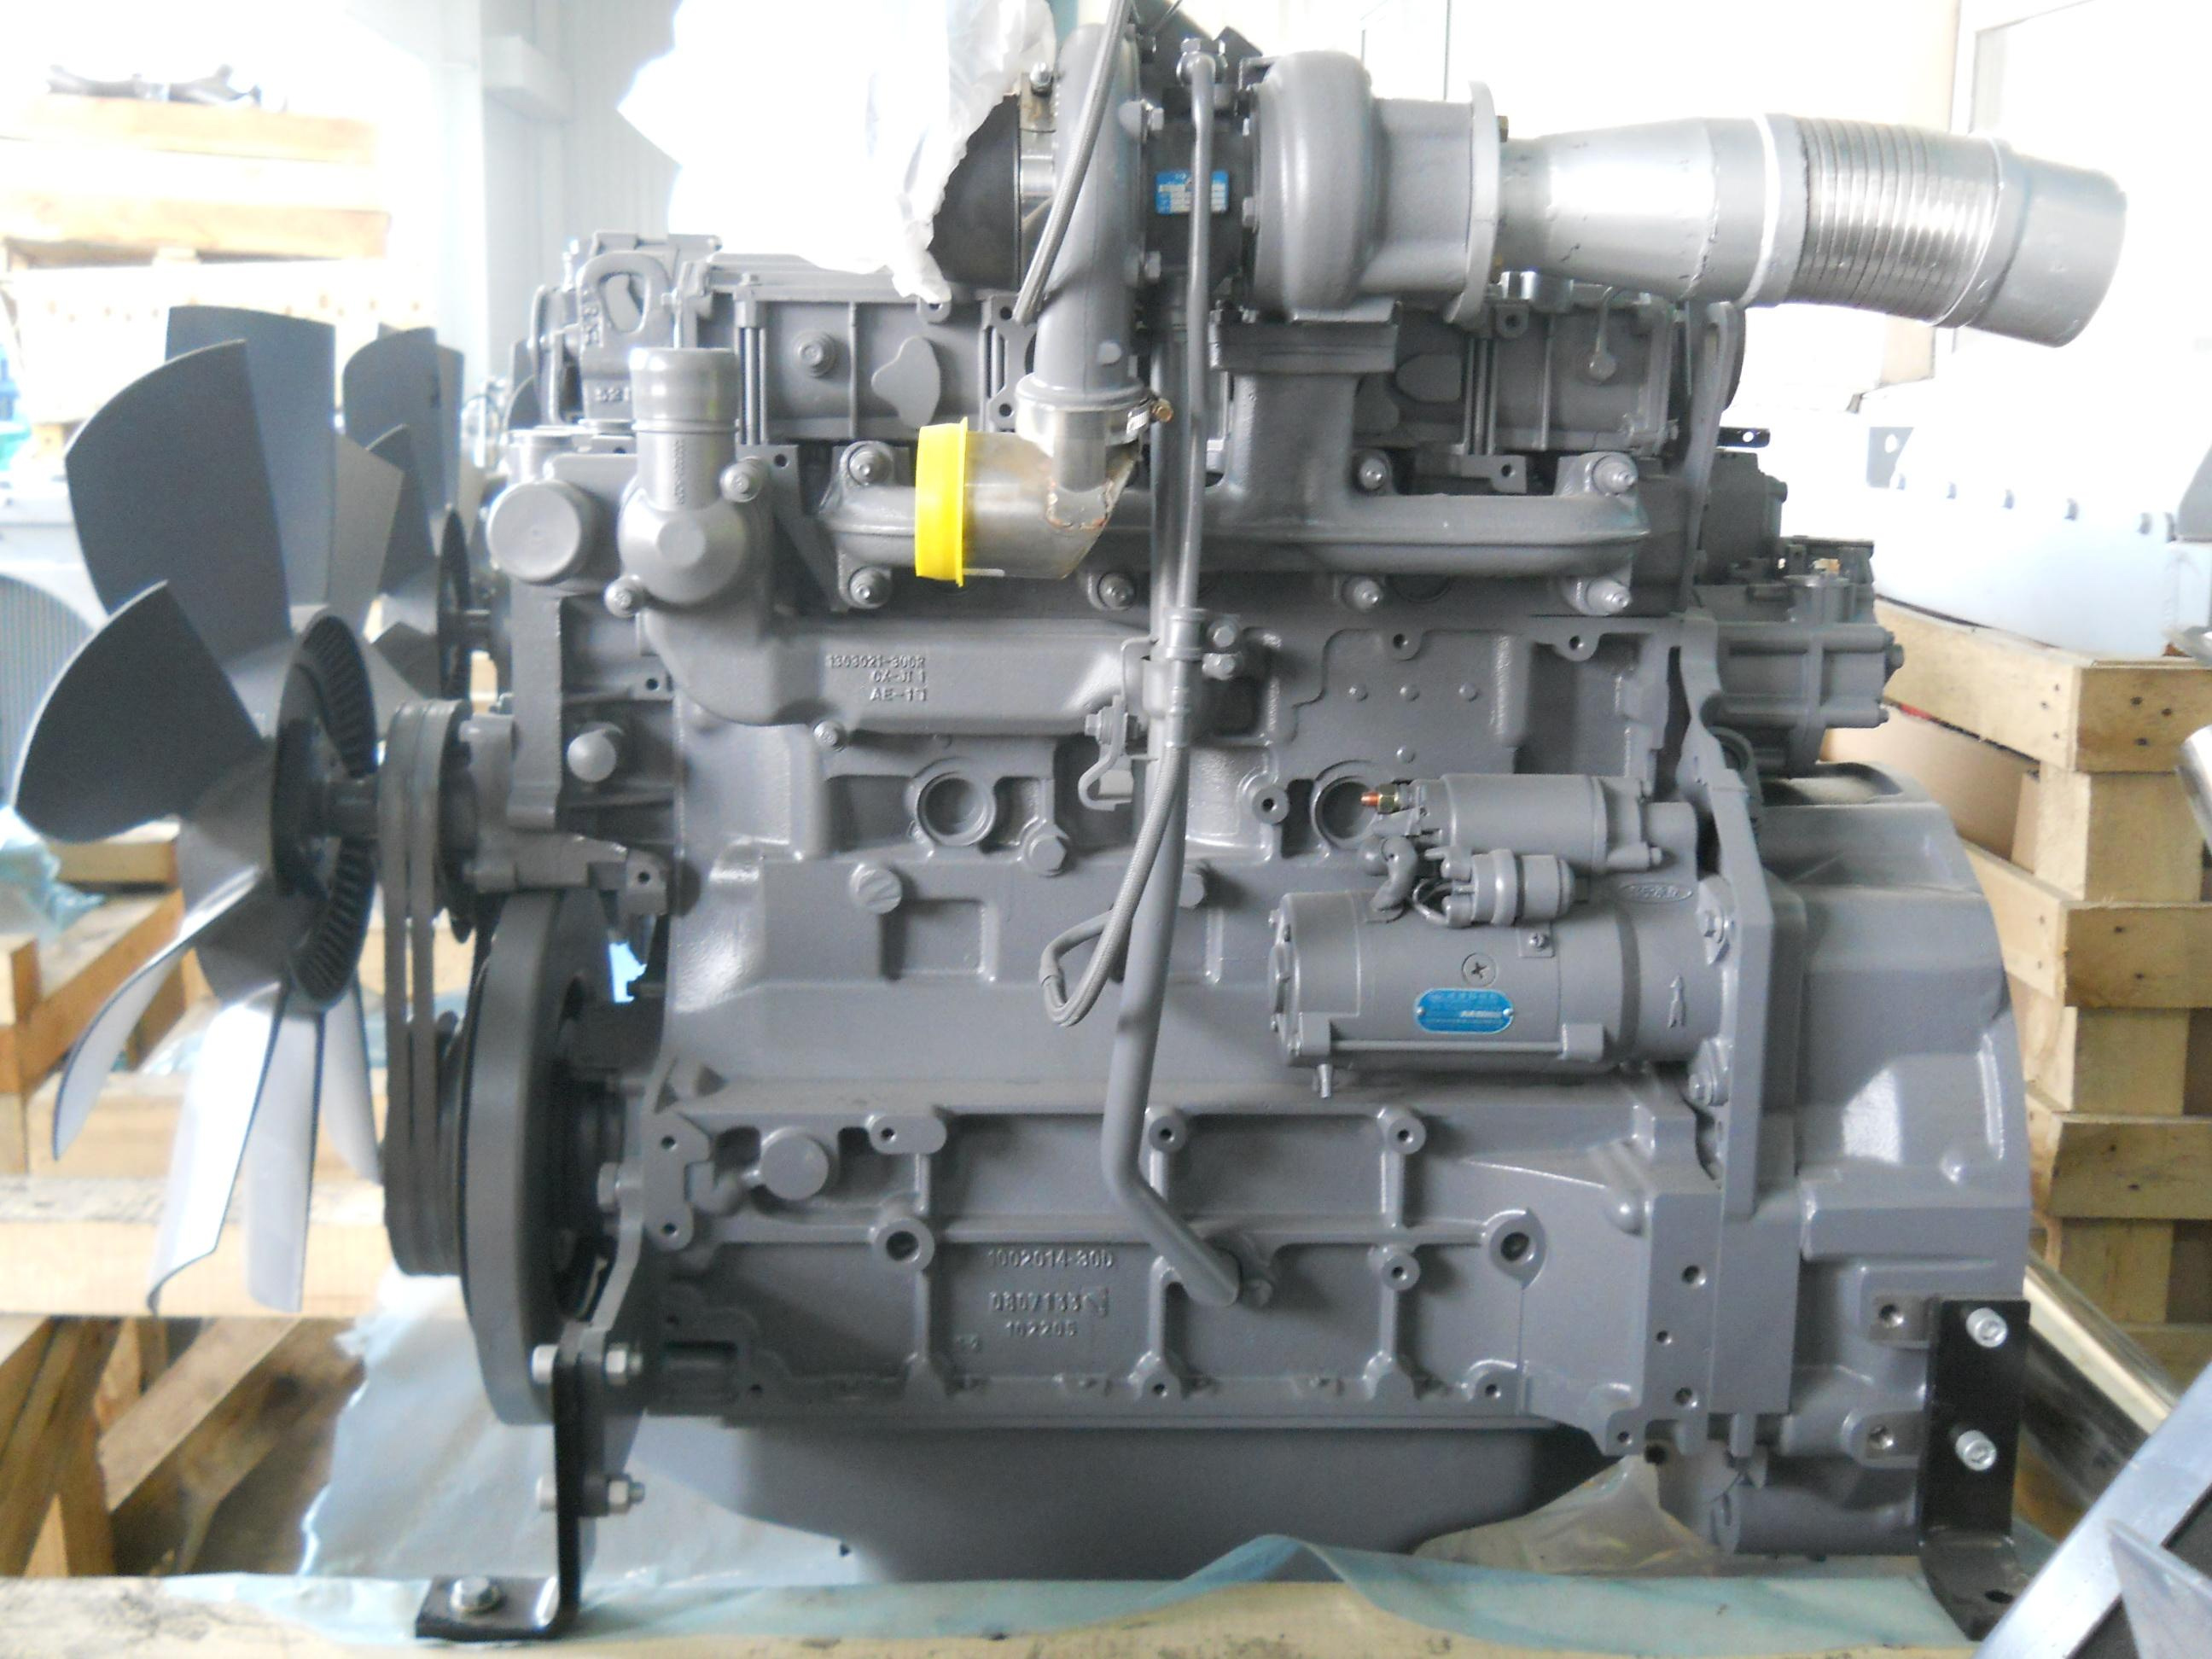 Deutz BF4M1013 Engine